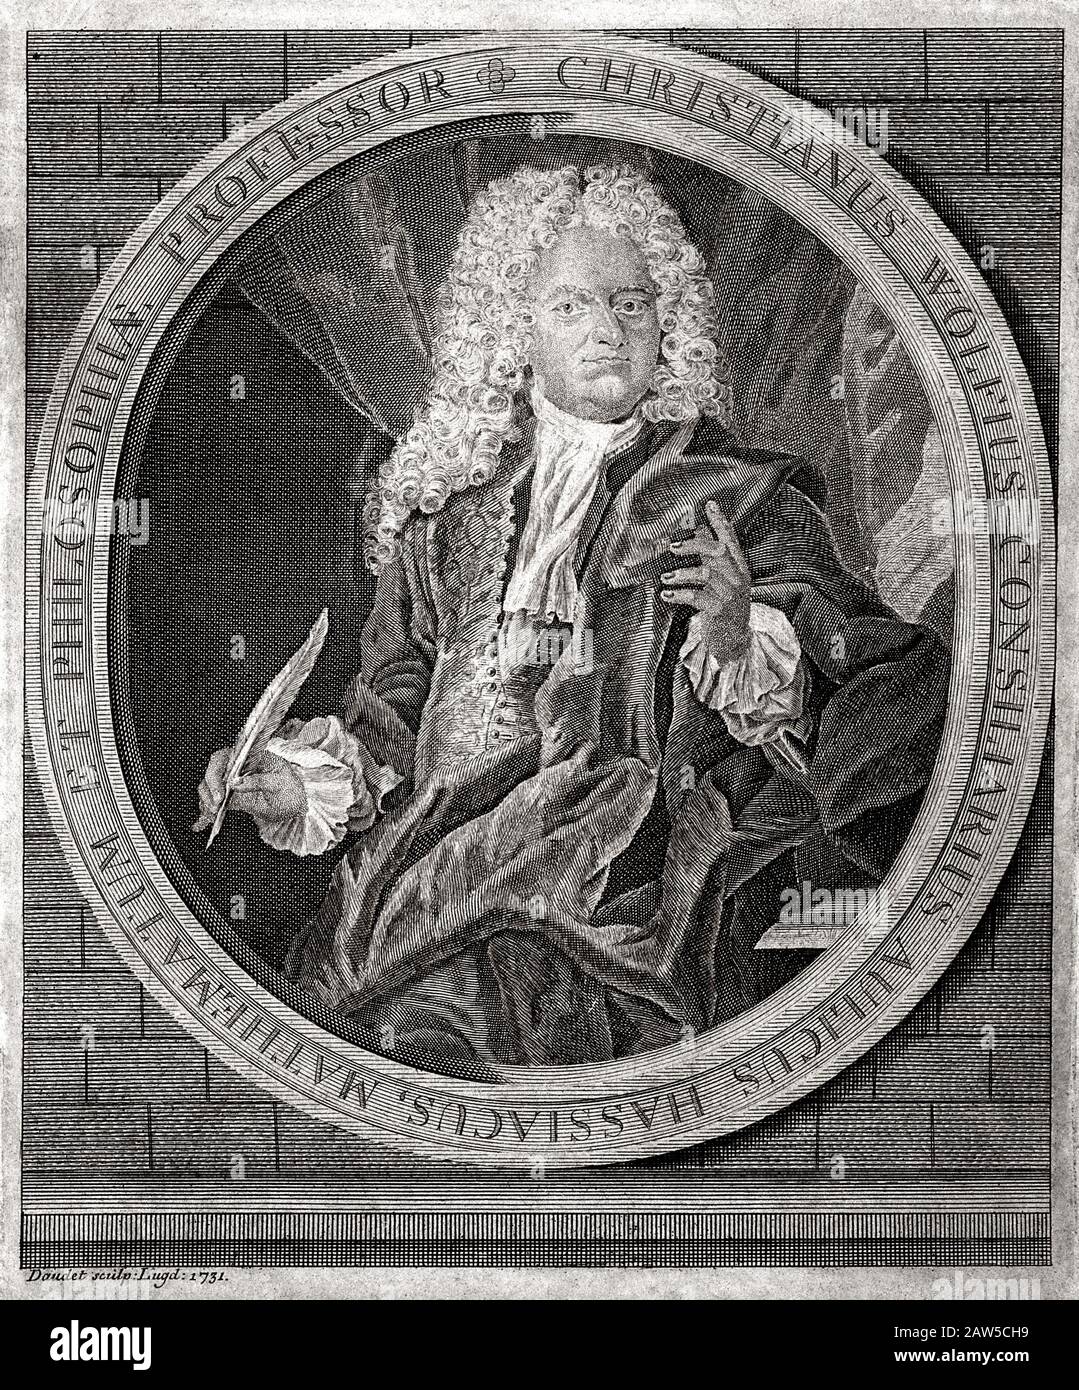 1731. , DEUTSCHLAND : Der gefeierte deutsche Mathematikhistoriker und Philosoph CHRISTIAN WOLFF (* 1679 in Berlin; † 1754 in Berlin) . Das von Daudet .Wolff gravierte Porträt war der mos Stockfoto